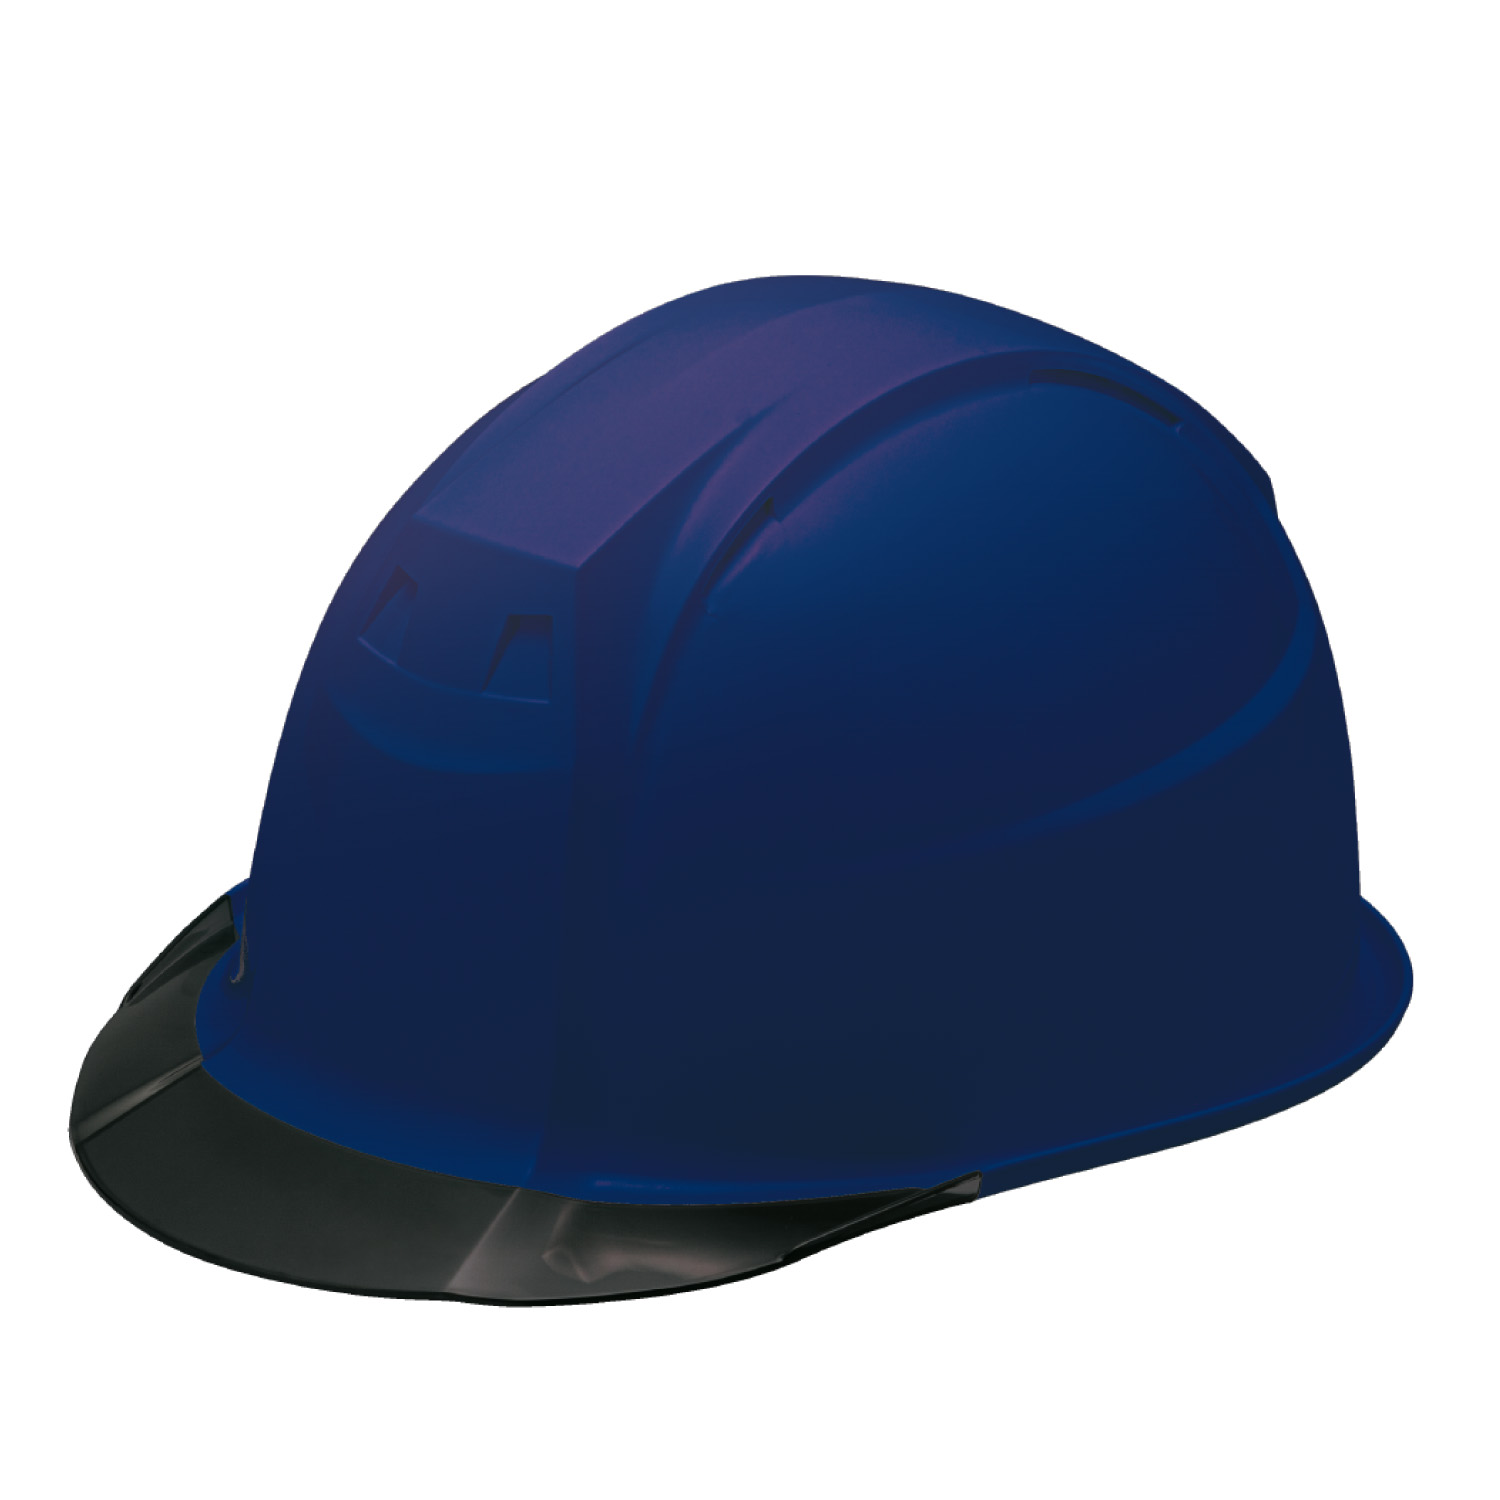 ヘルメット 保護帽 Fo III-1 飛来・落下物用 電気用 通期孔なし スモークバイザー 透明ひさし 全7色 加賀ヘルメット KAGA